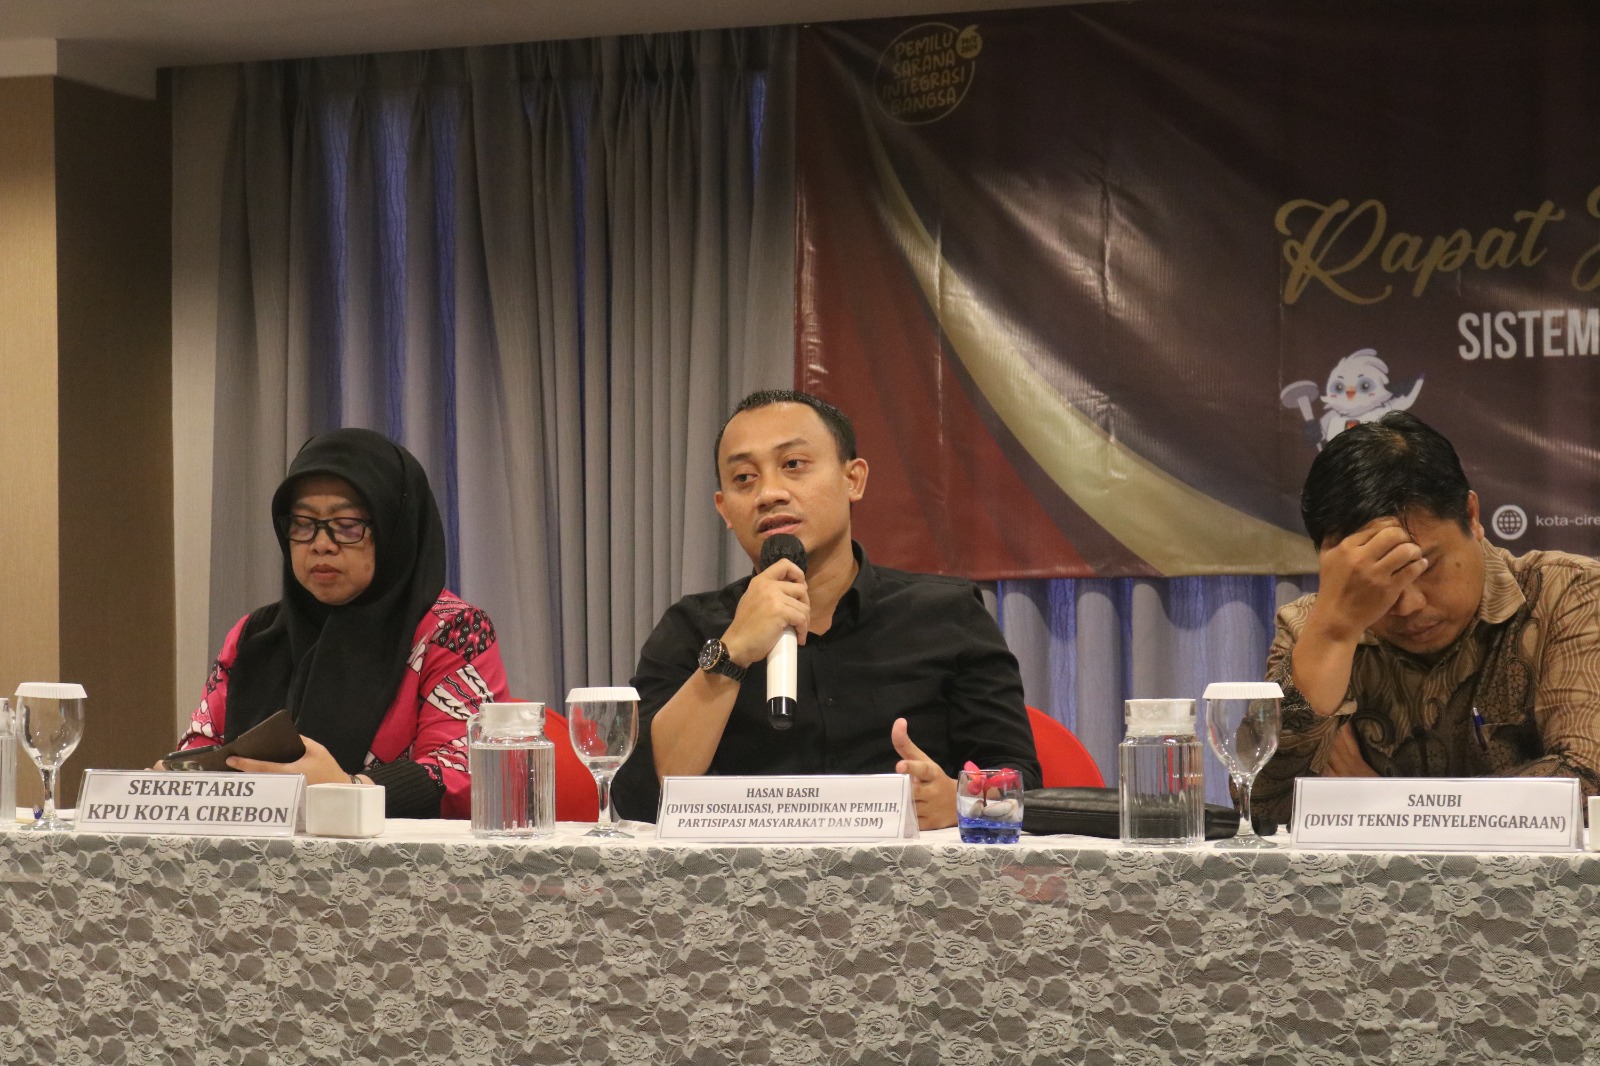 Partisipasi Pemilih Kota Cirebon Alami Peningkatan Pada Pemilu, KPU: Modal Kepercayaan di Pilkada